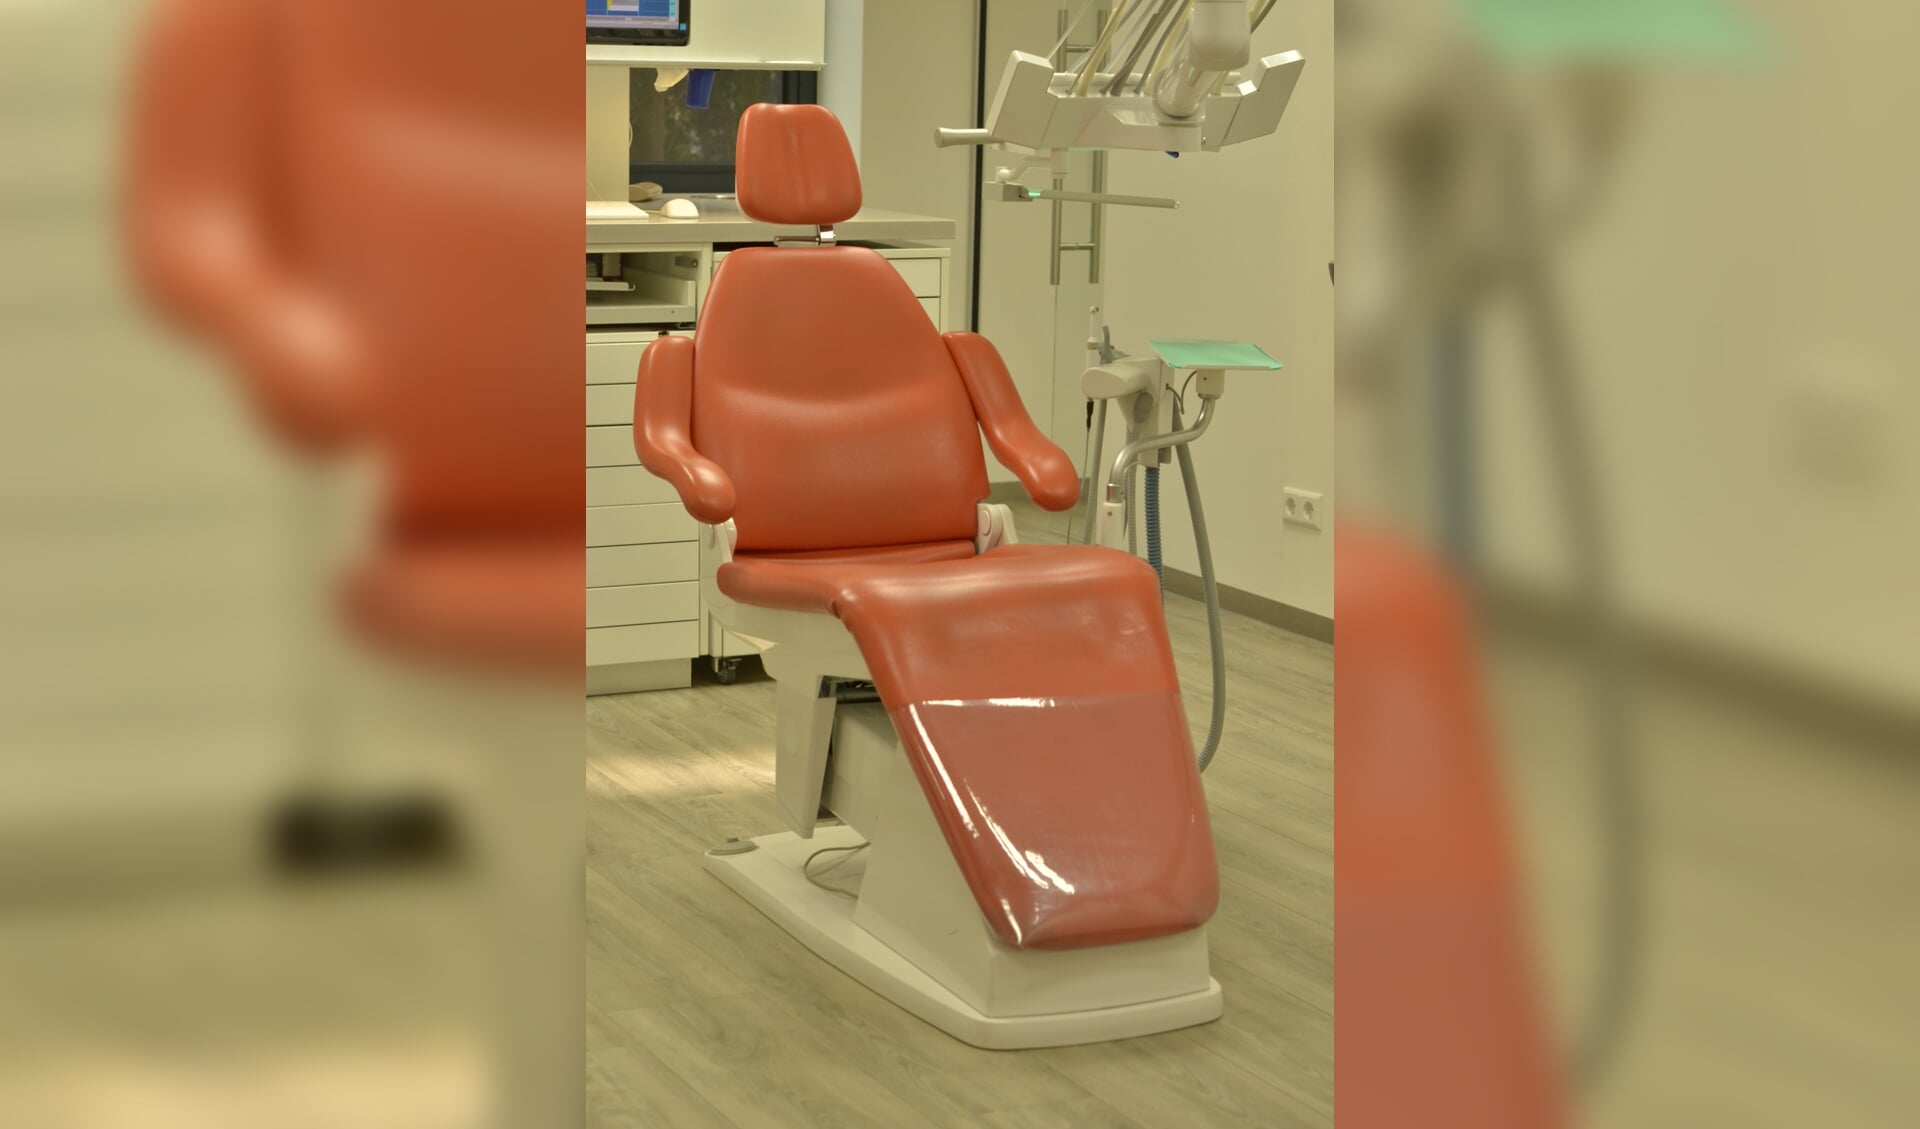 Welke nieuwe tandartsassistente behandelt binnenkort patiënten in Zwartebroek?